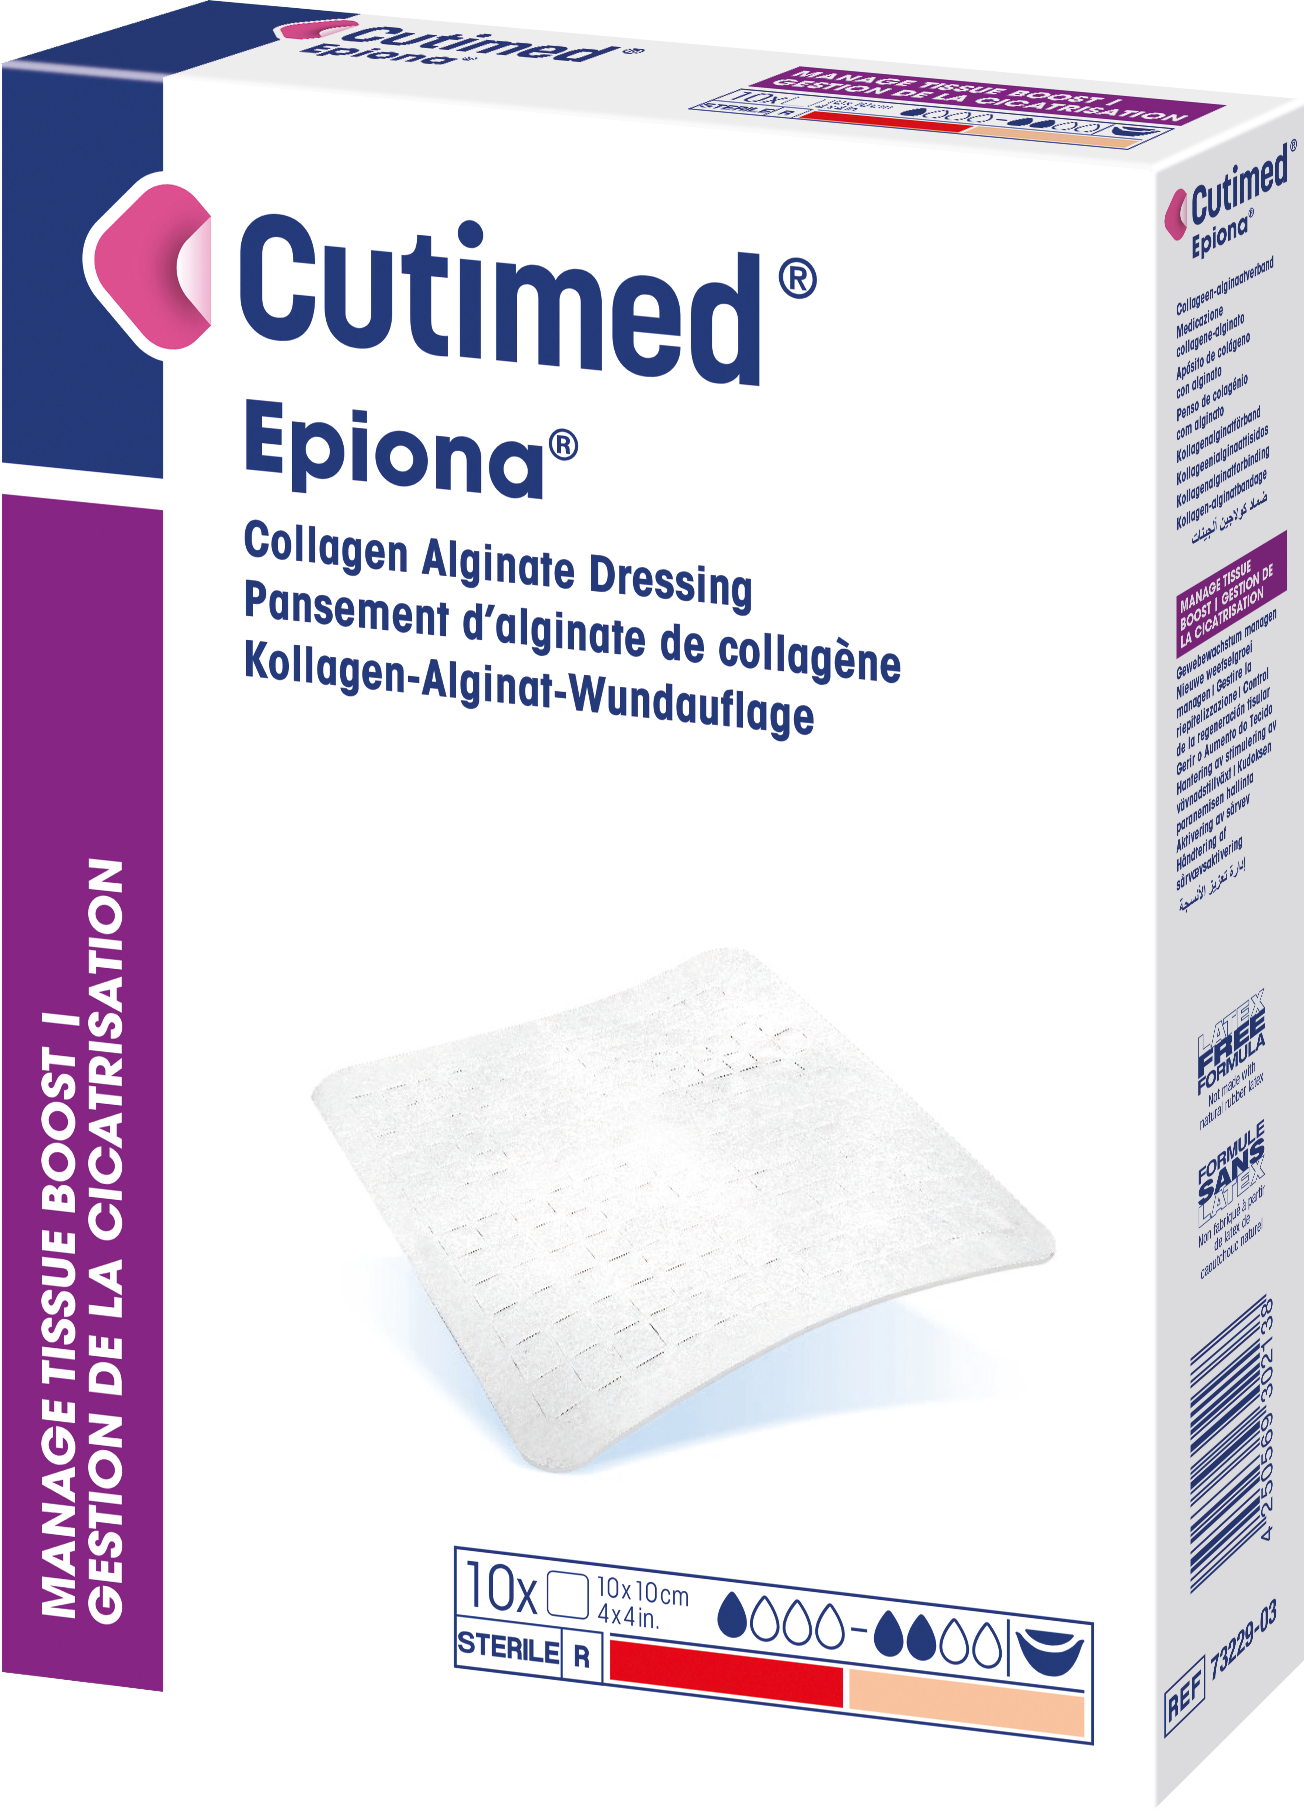 Bilde som viser et pakningsbilde av Cutimed® Epiona®